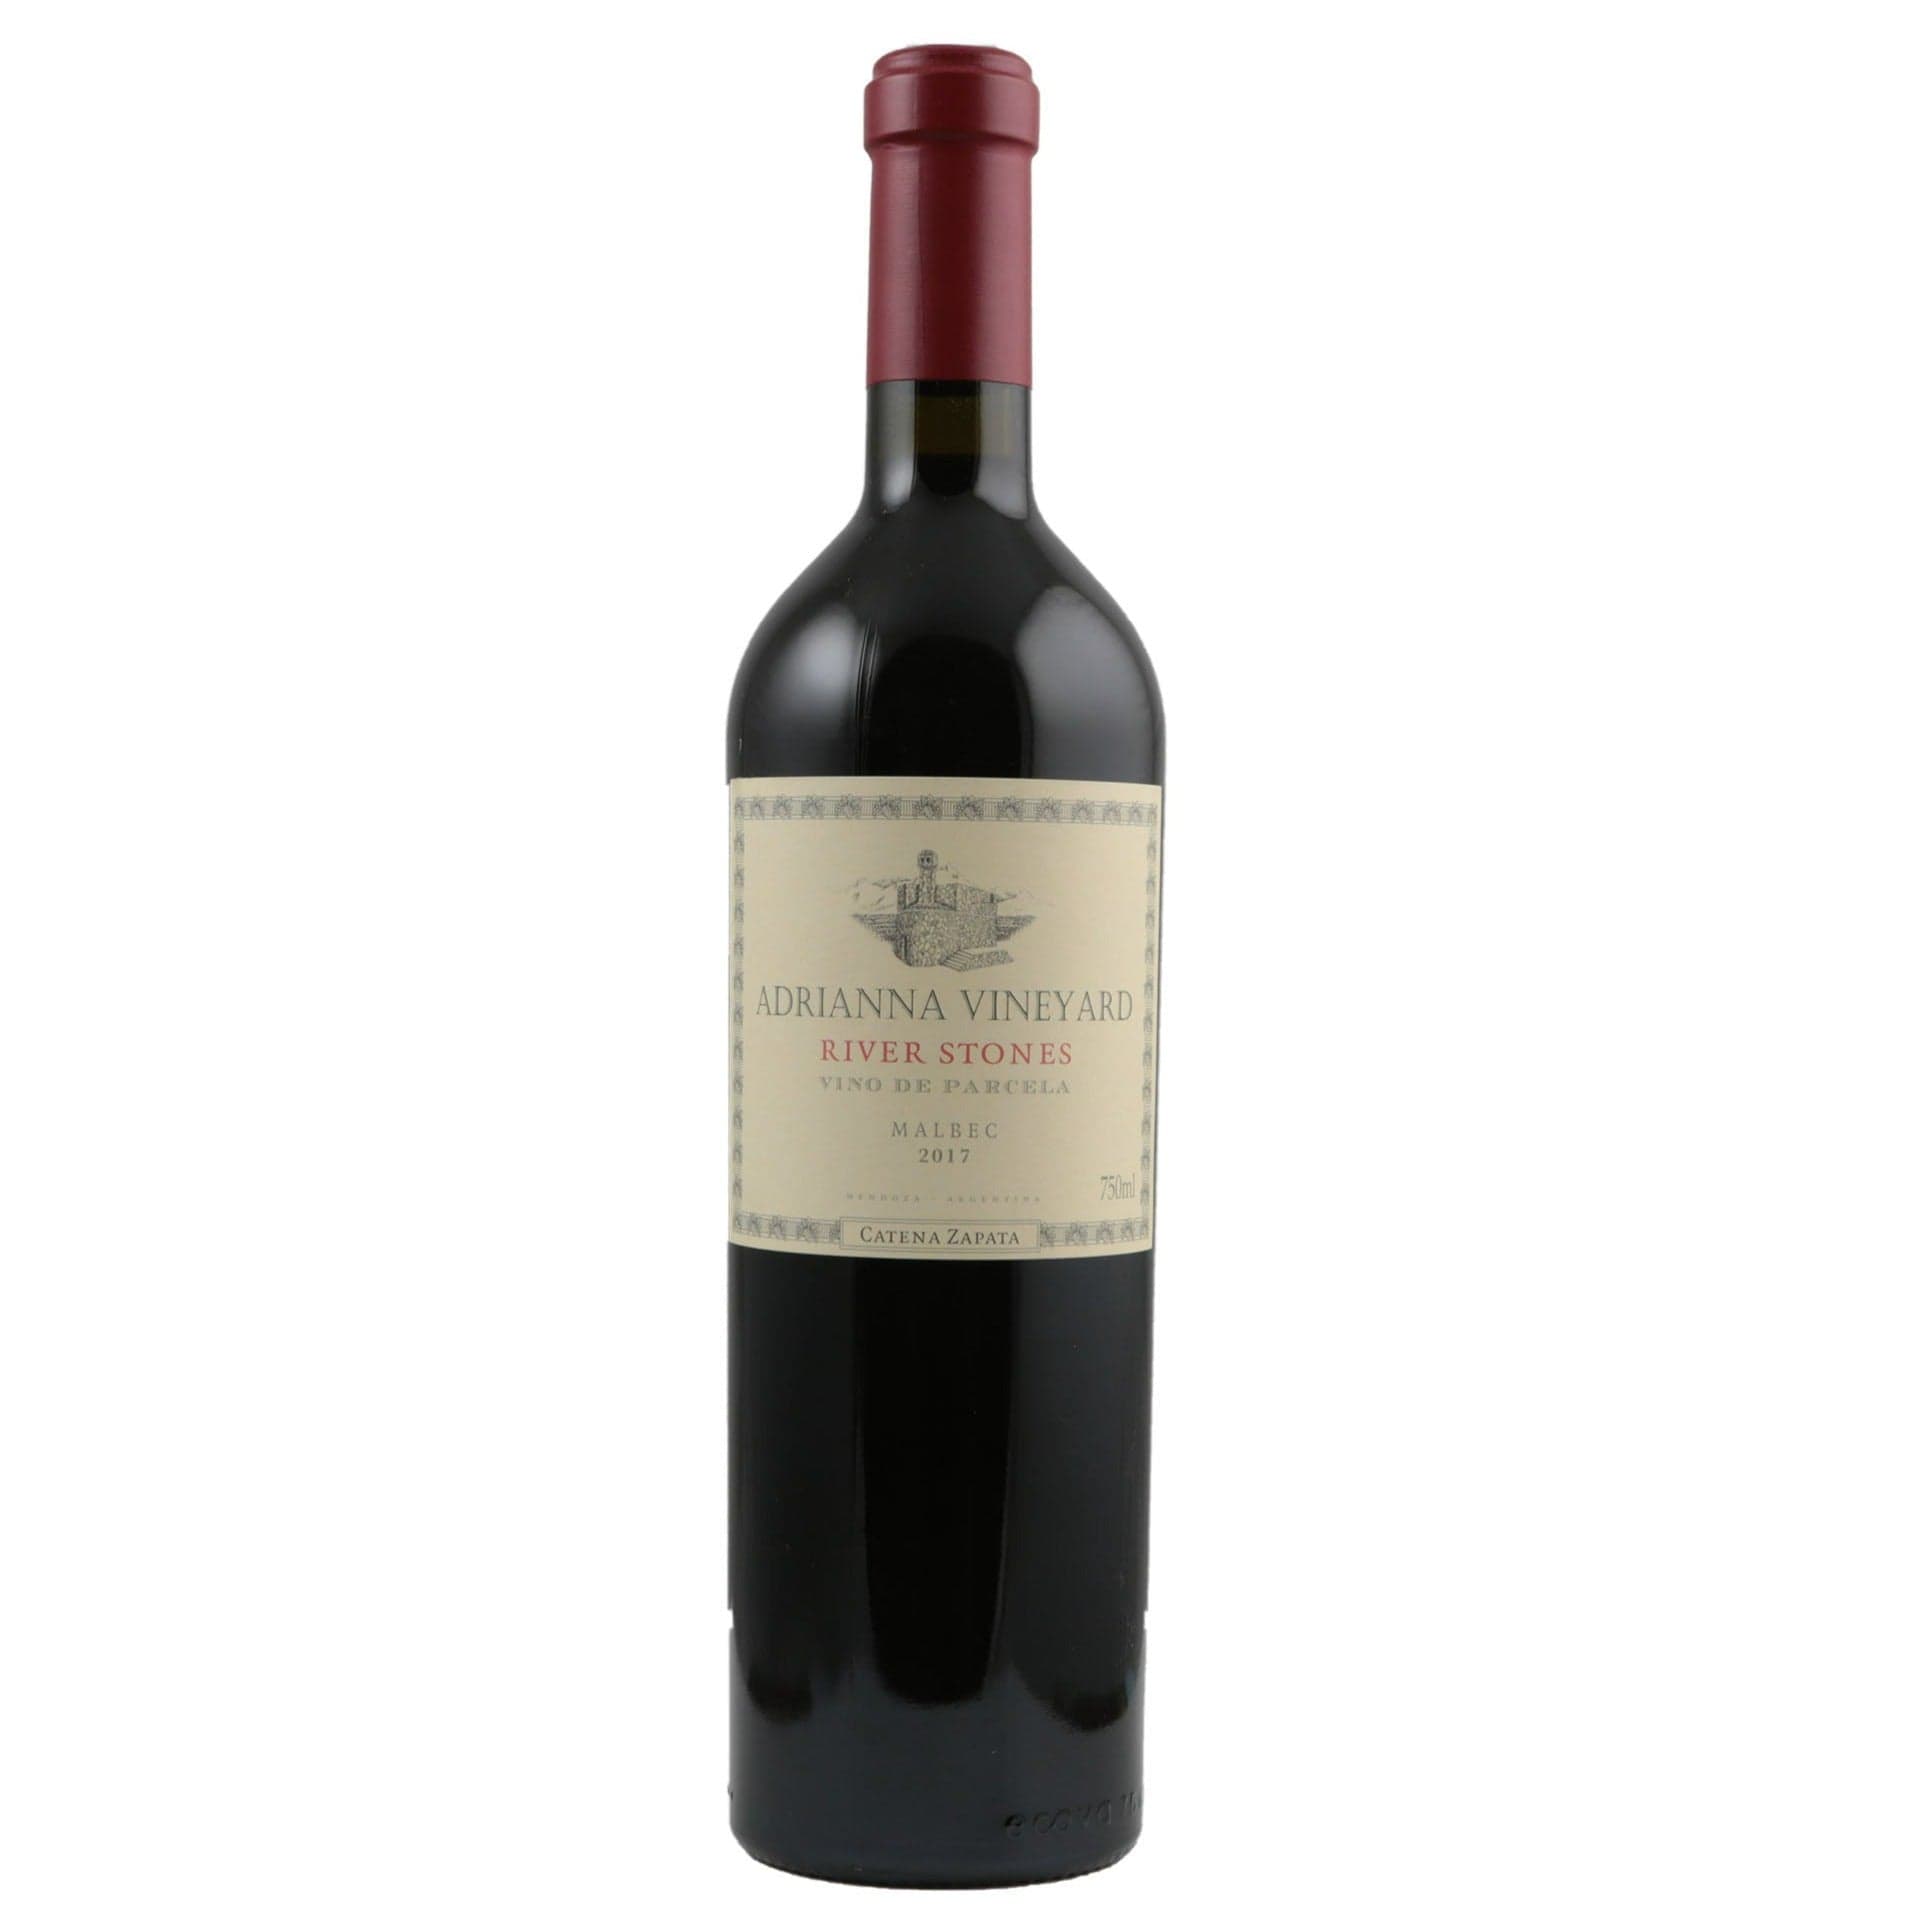 Single bottle of Red wine Catena Zapata, Adrianna River Stones Malbec, Mendoza, 2017 100% Malbec